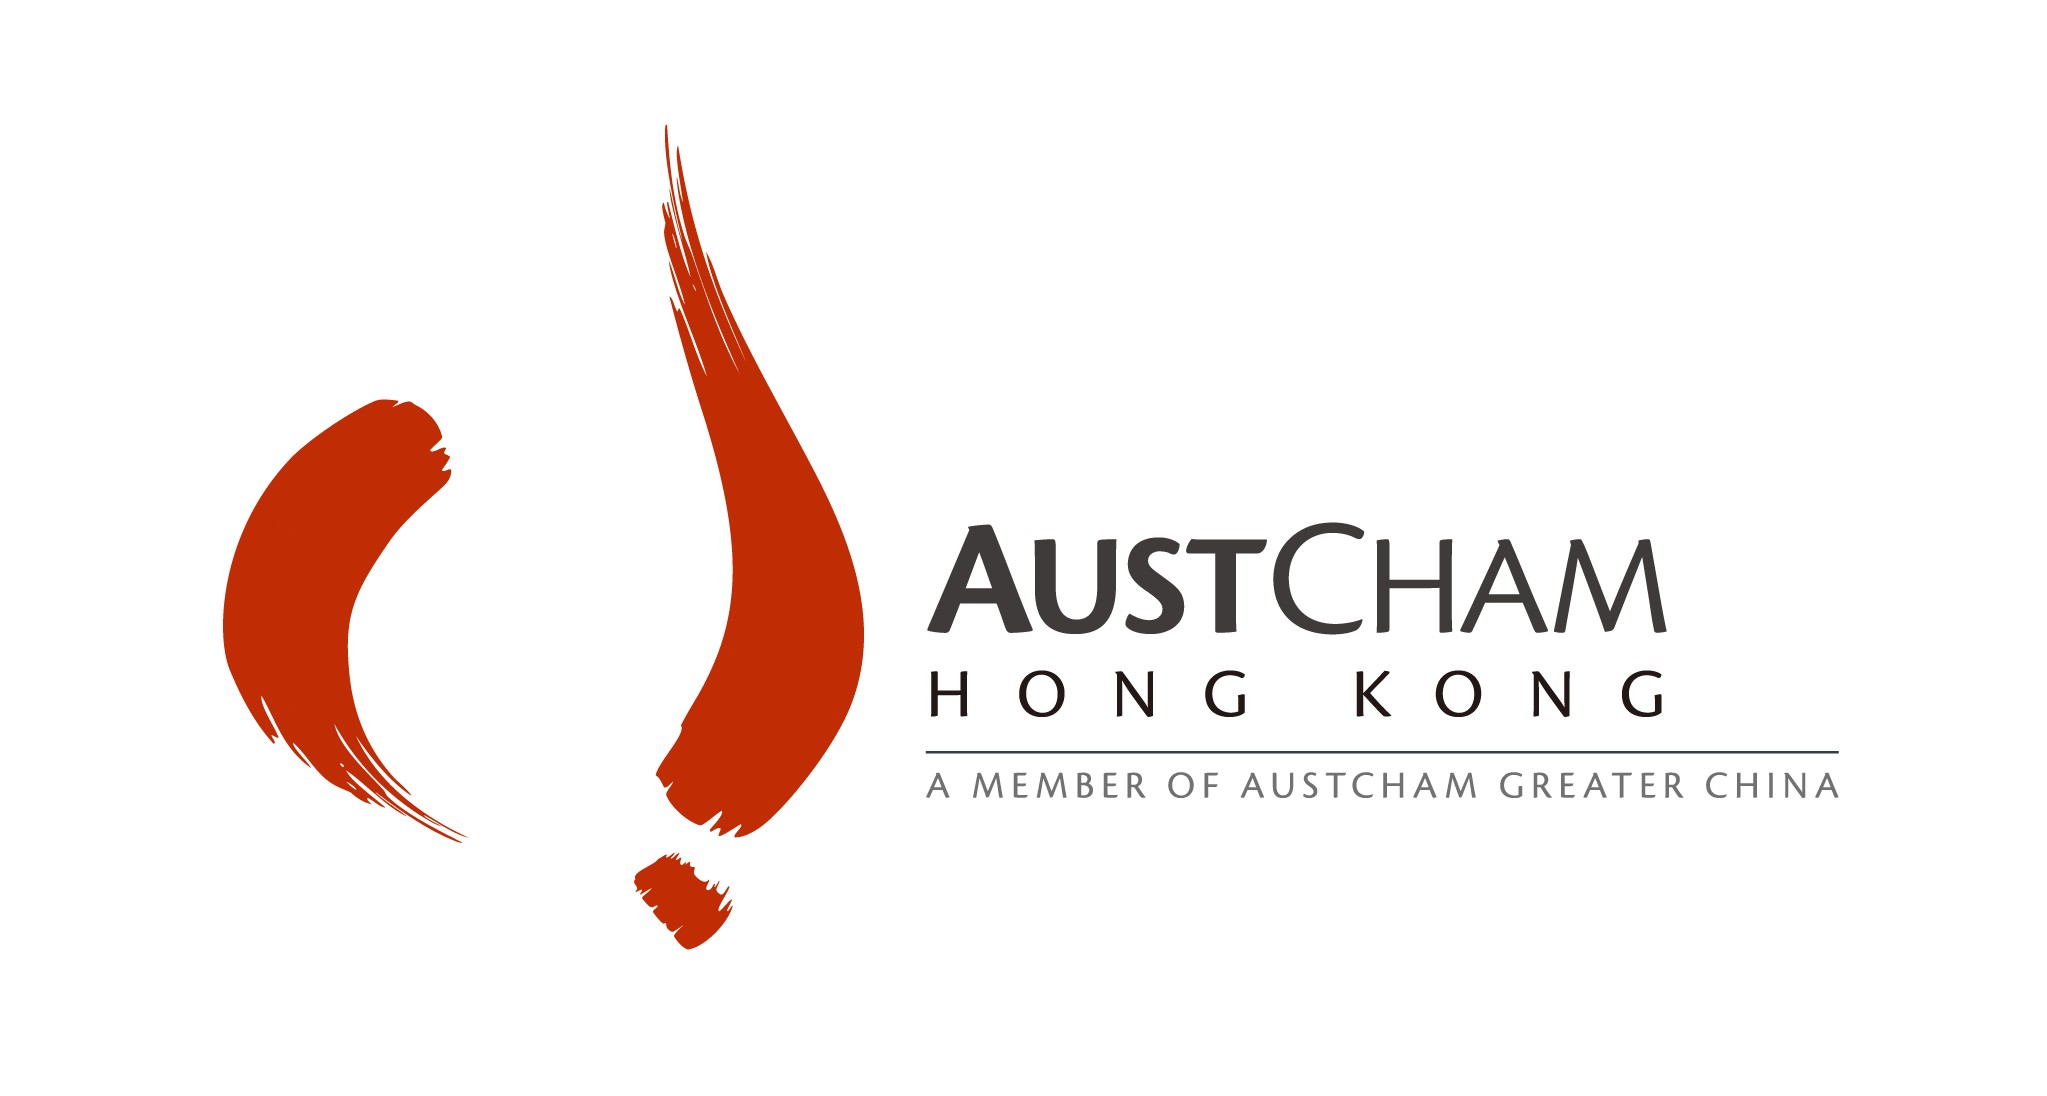 Australian Chamber of Commerce in Hong Kong